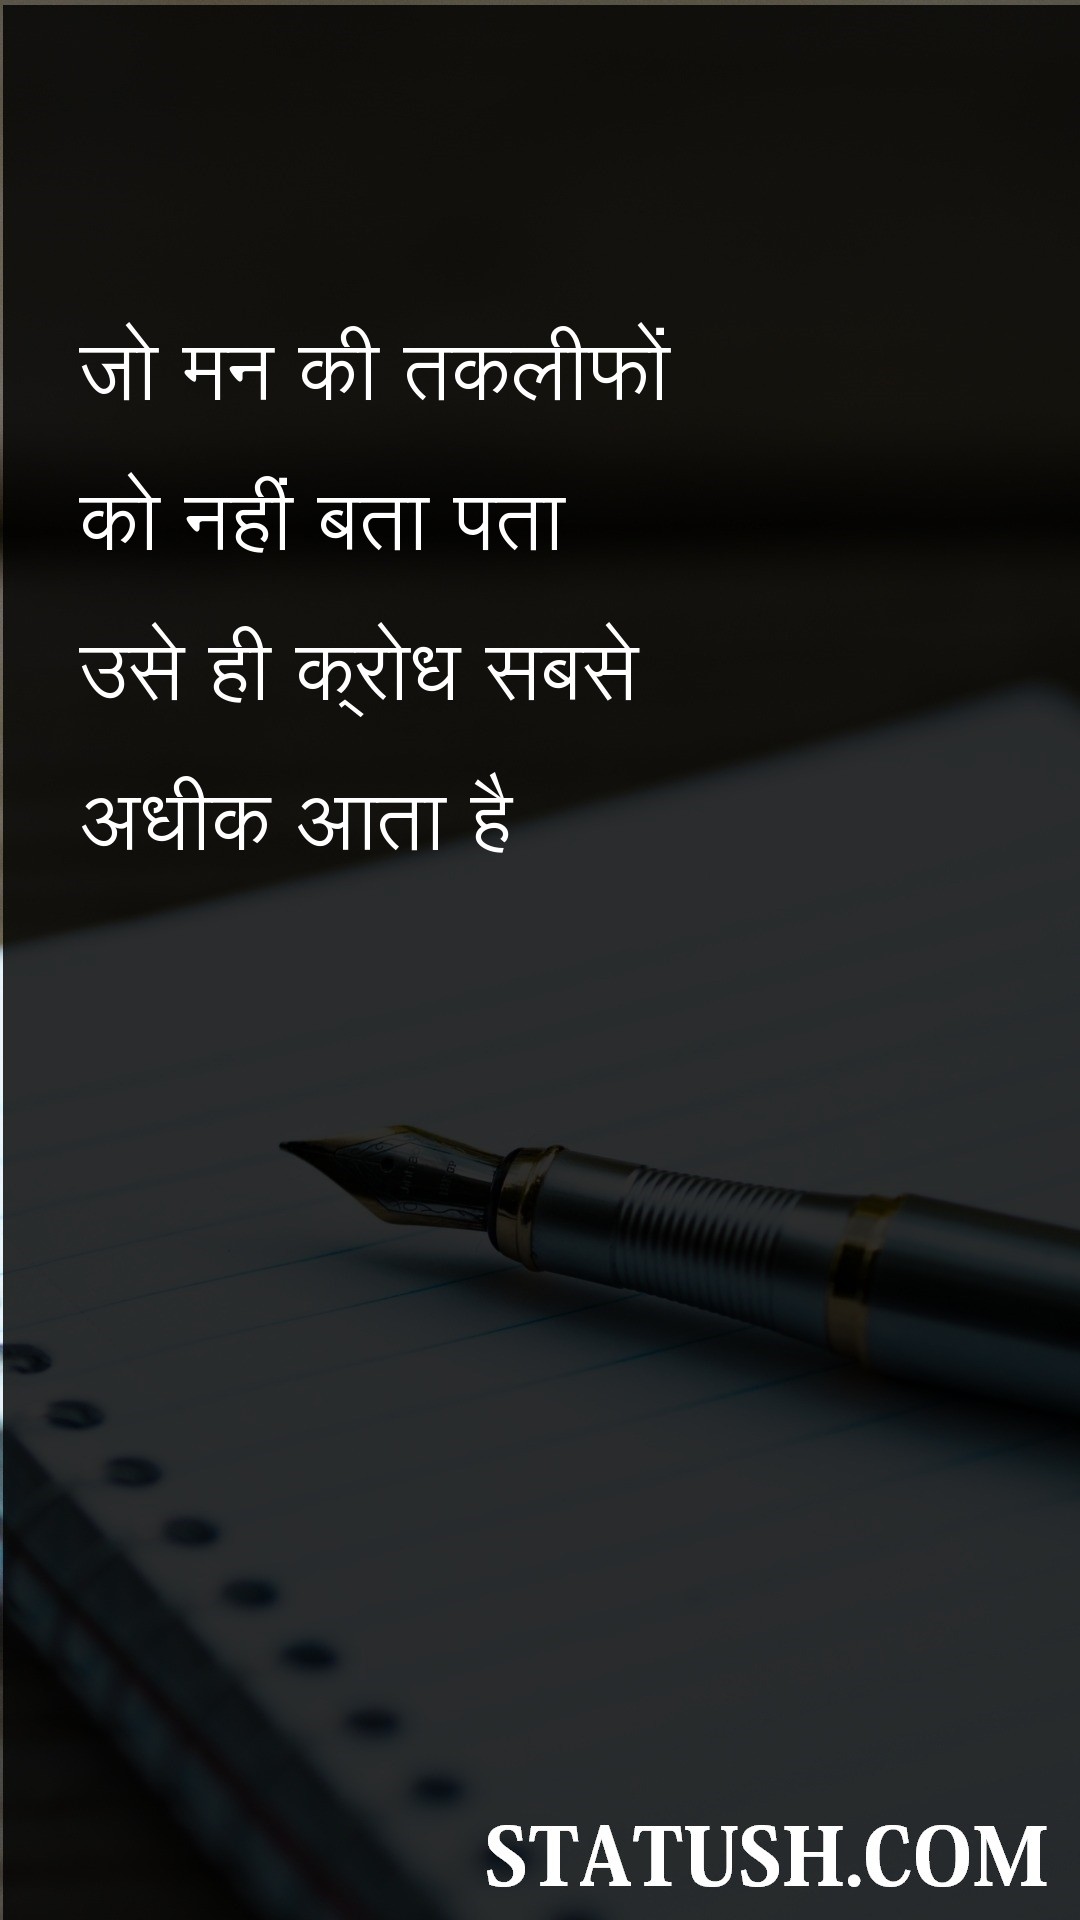 anger comes the most Hindi Quotes at statush.com